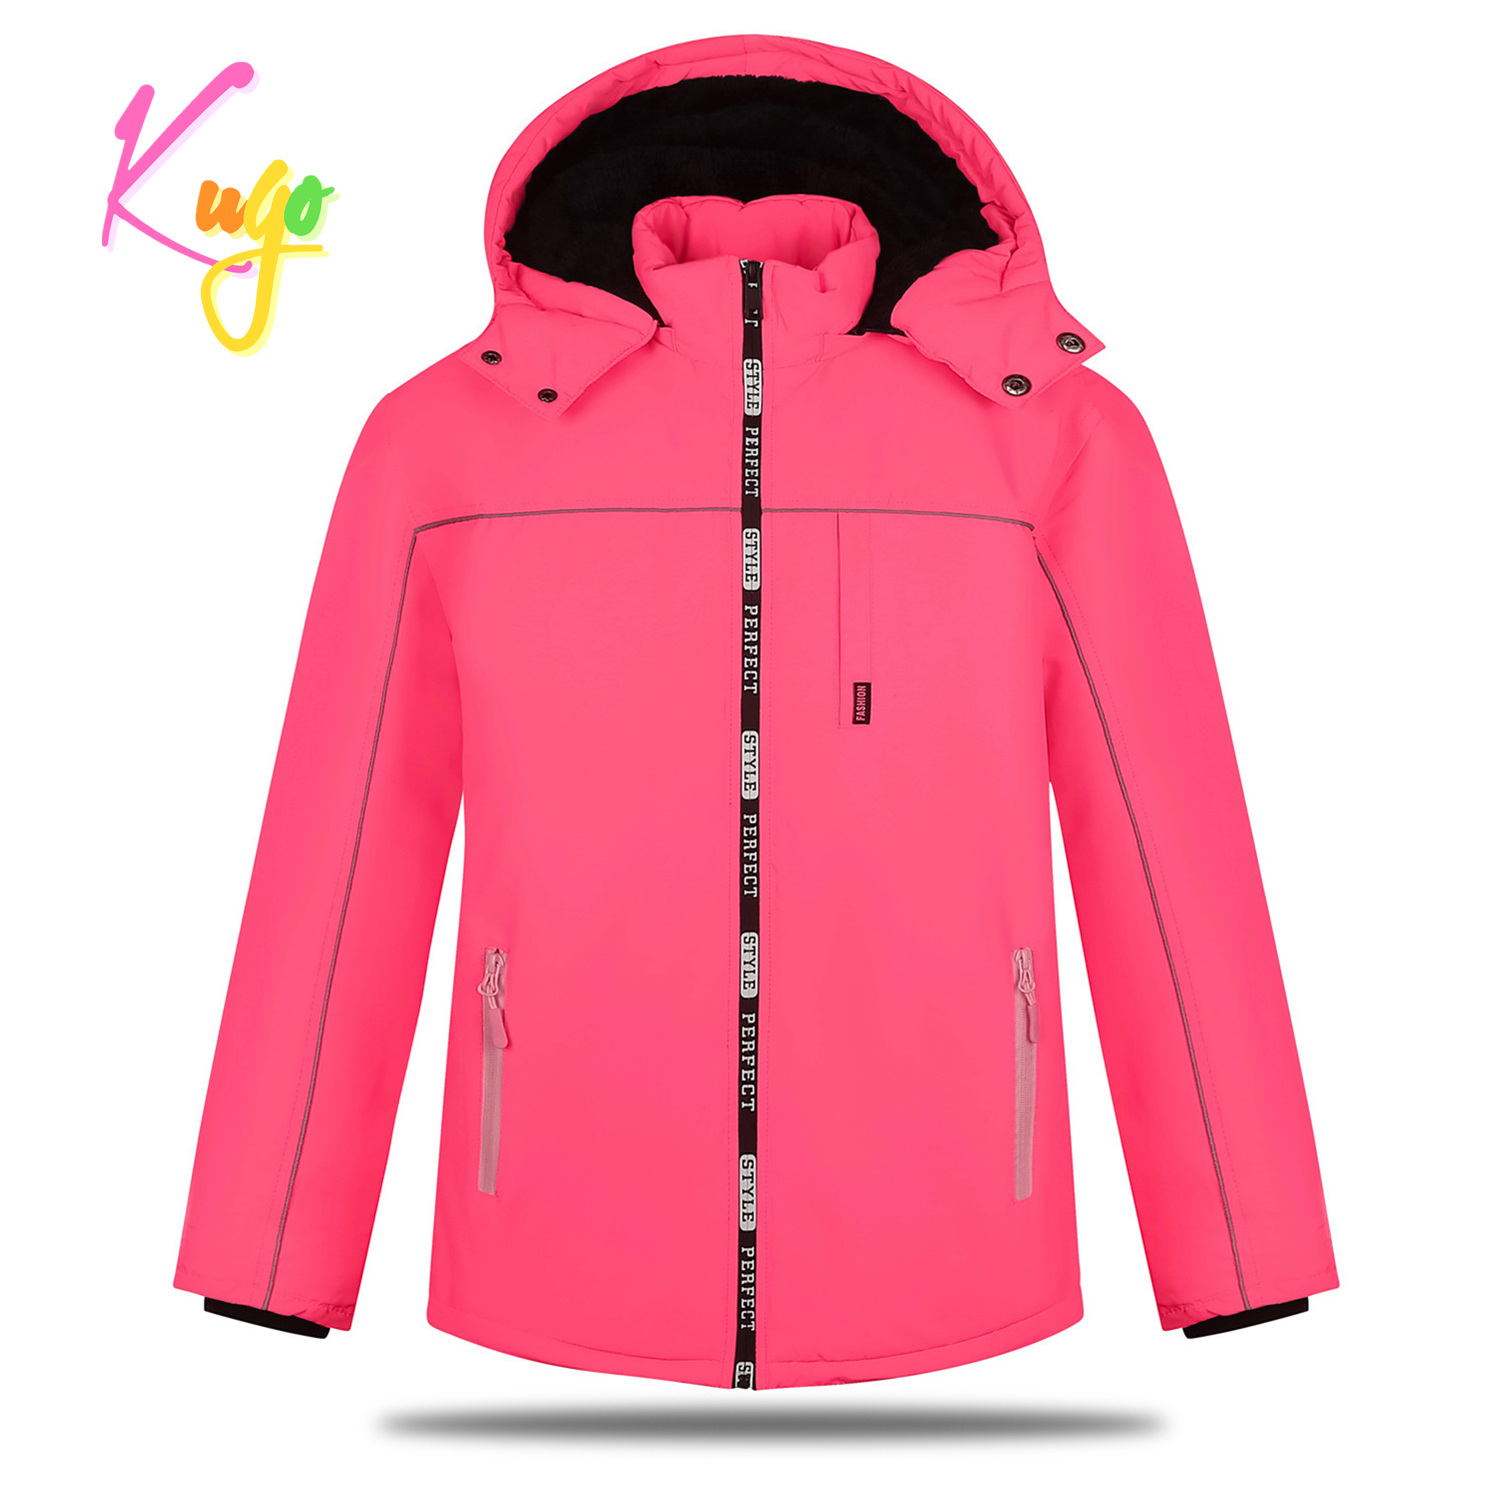 Dívčí zimní bunda - KUGO BU606, neonově lososová Barva: Lososová, Velikost: 164